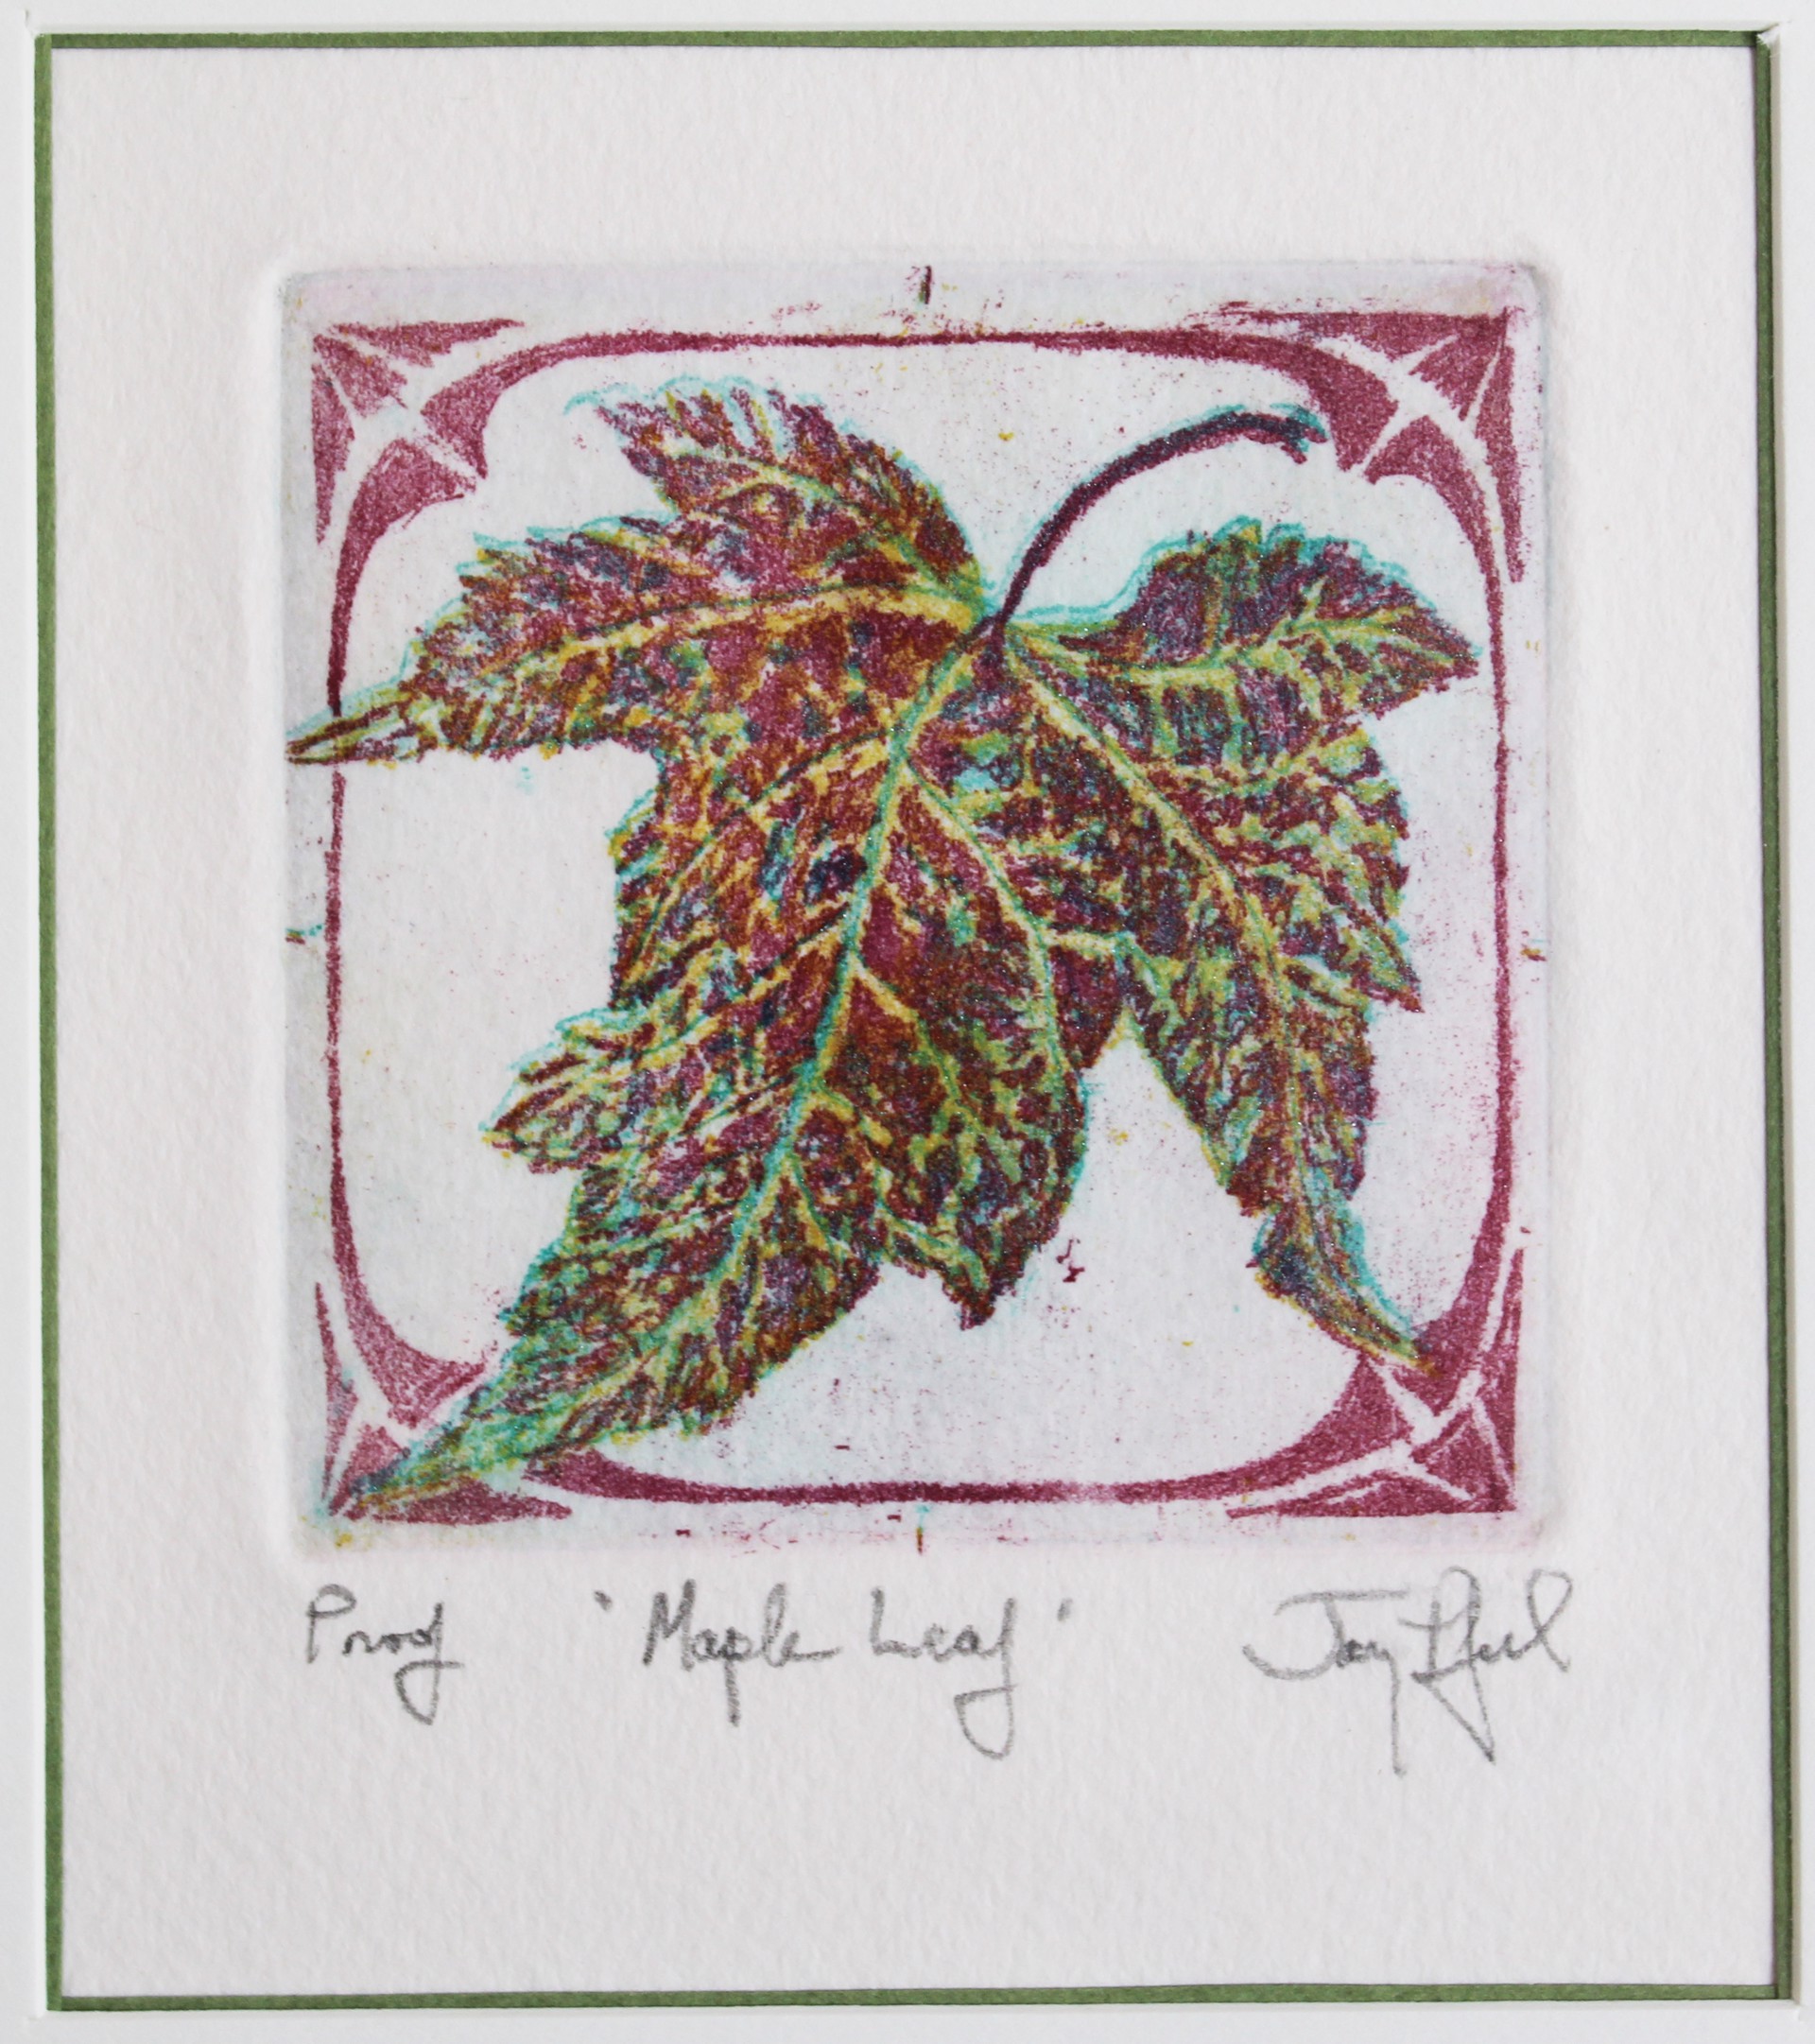 Maple Leaf by Jay Pfeil